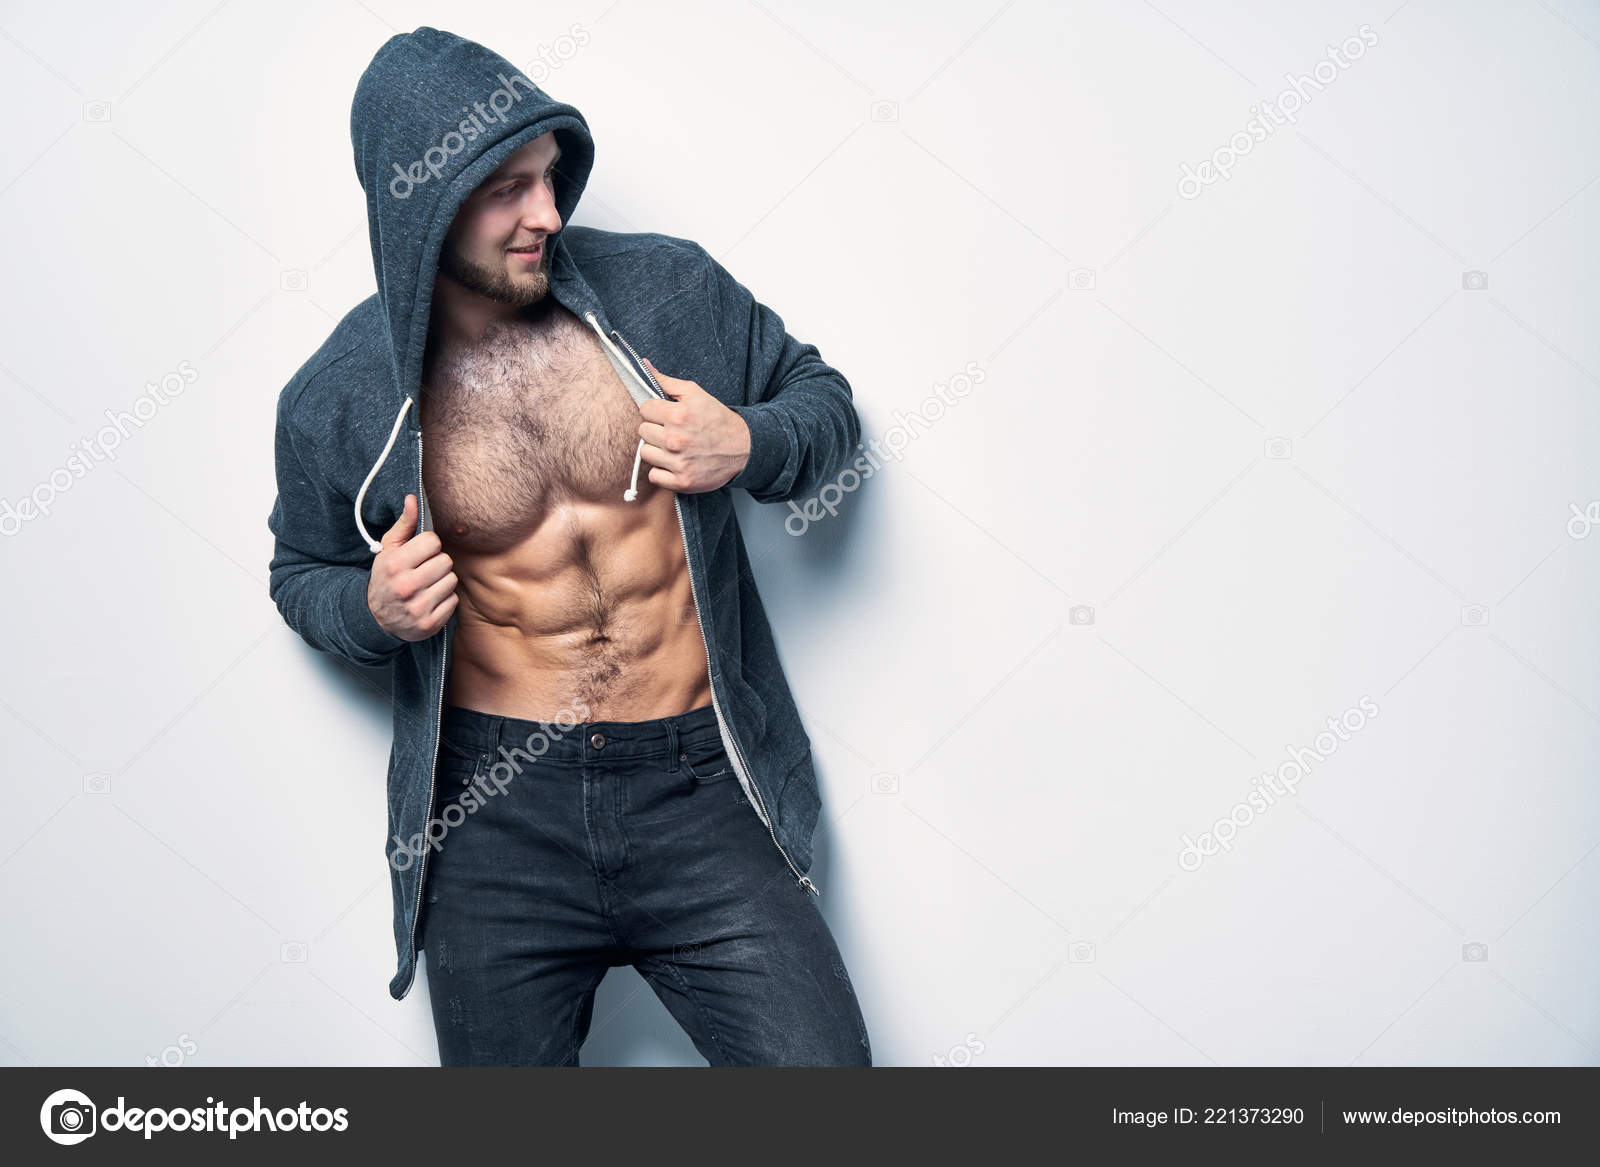 Hombre musculoso con sudadera gris con capucha Stock Photo